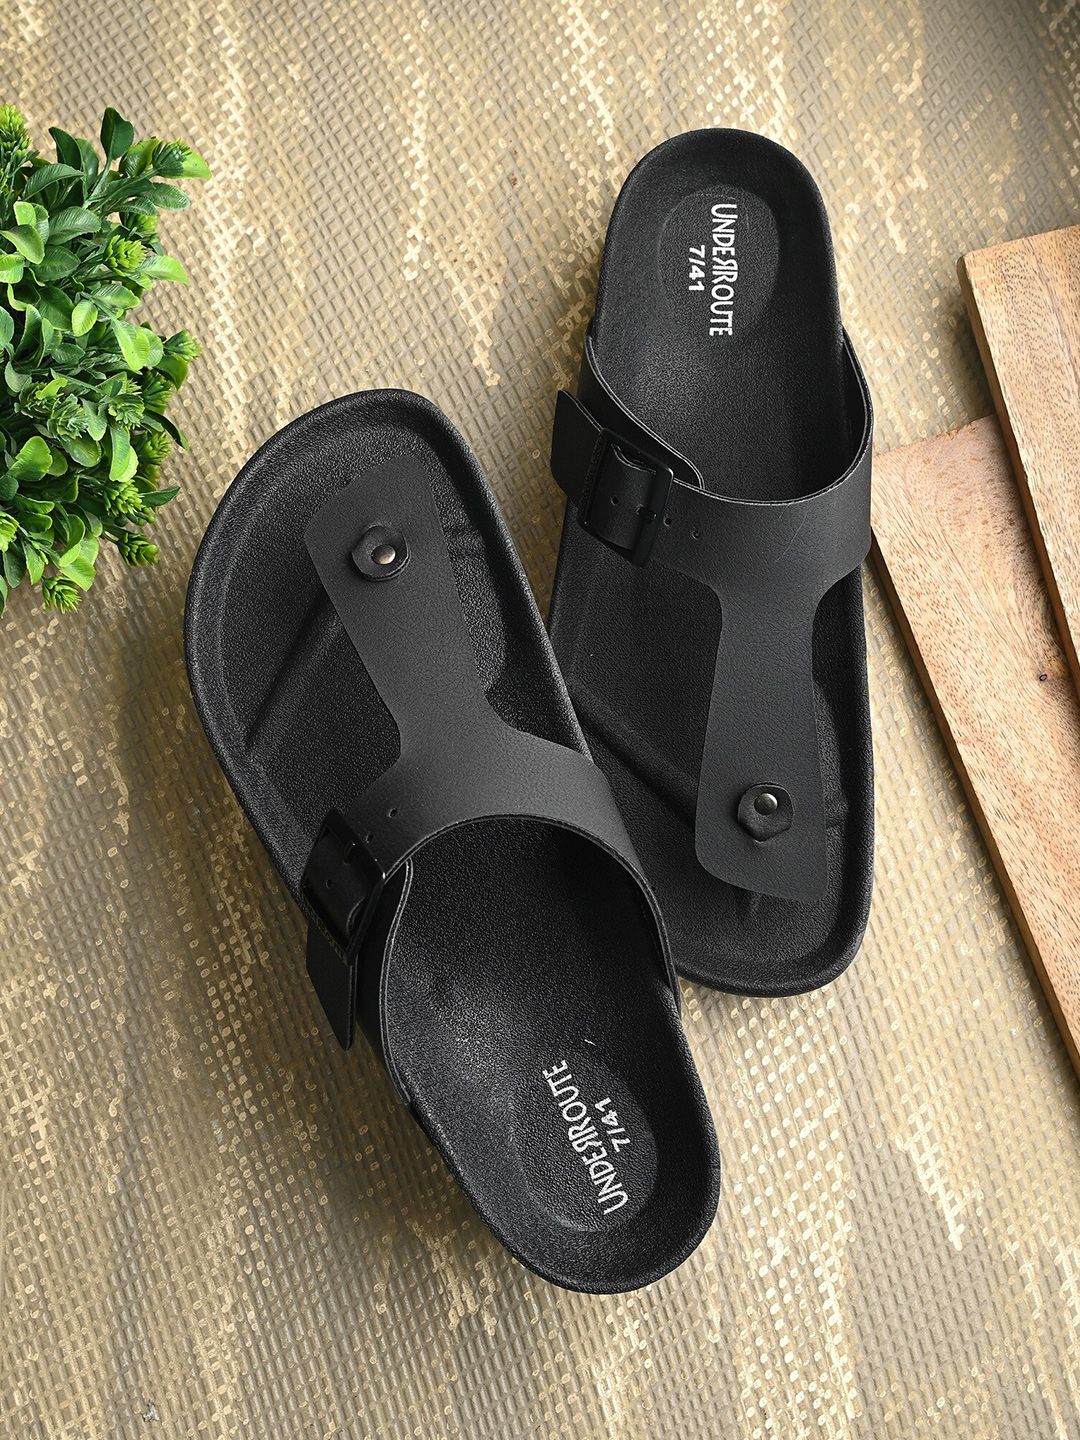 UNDERROUTE Men Open Toe Comfort Sandals With Buckle Detail